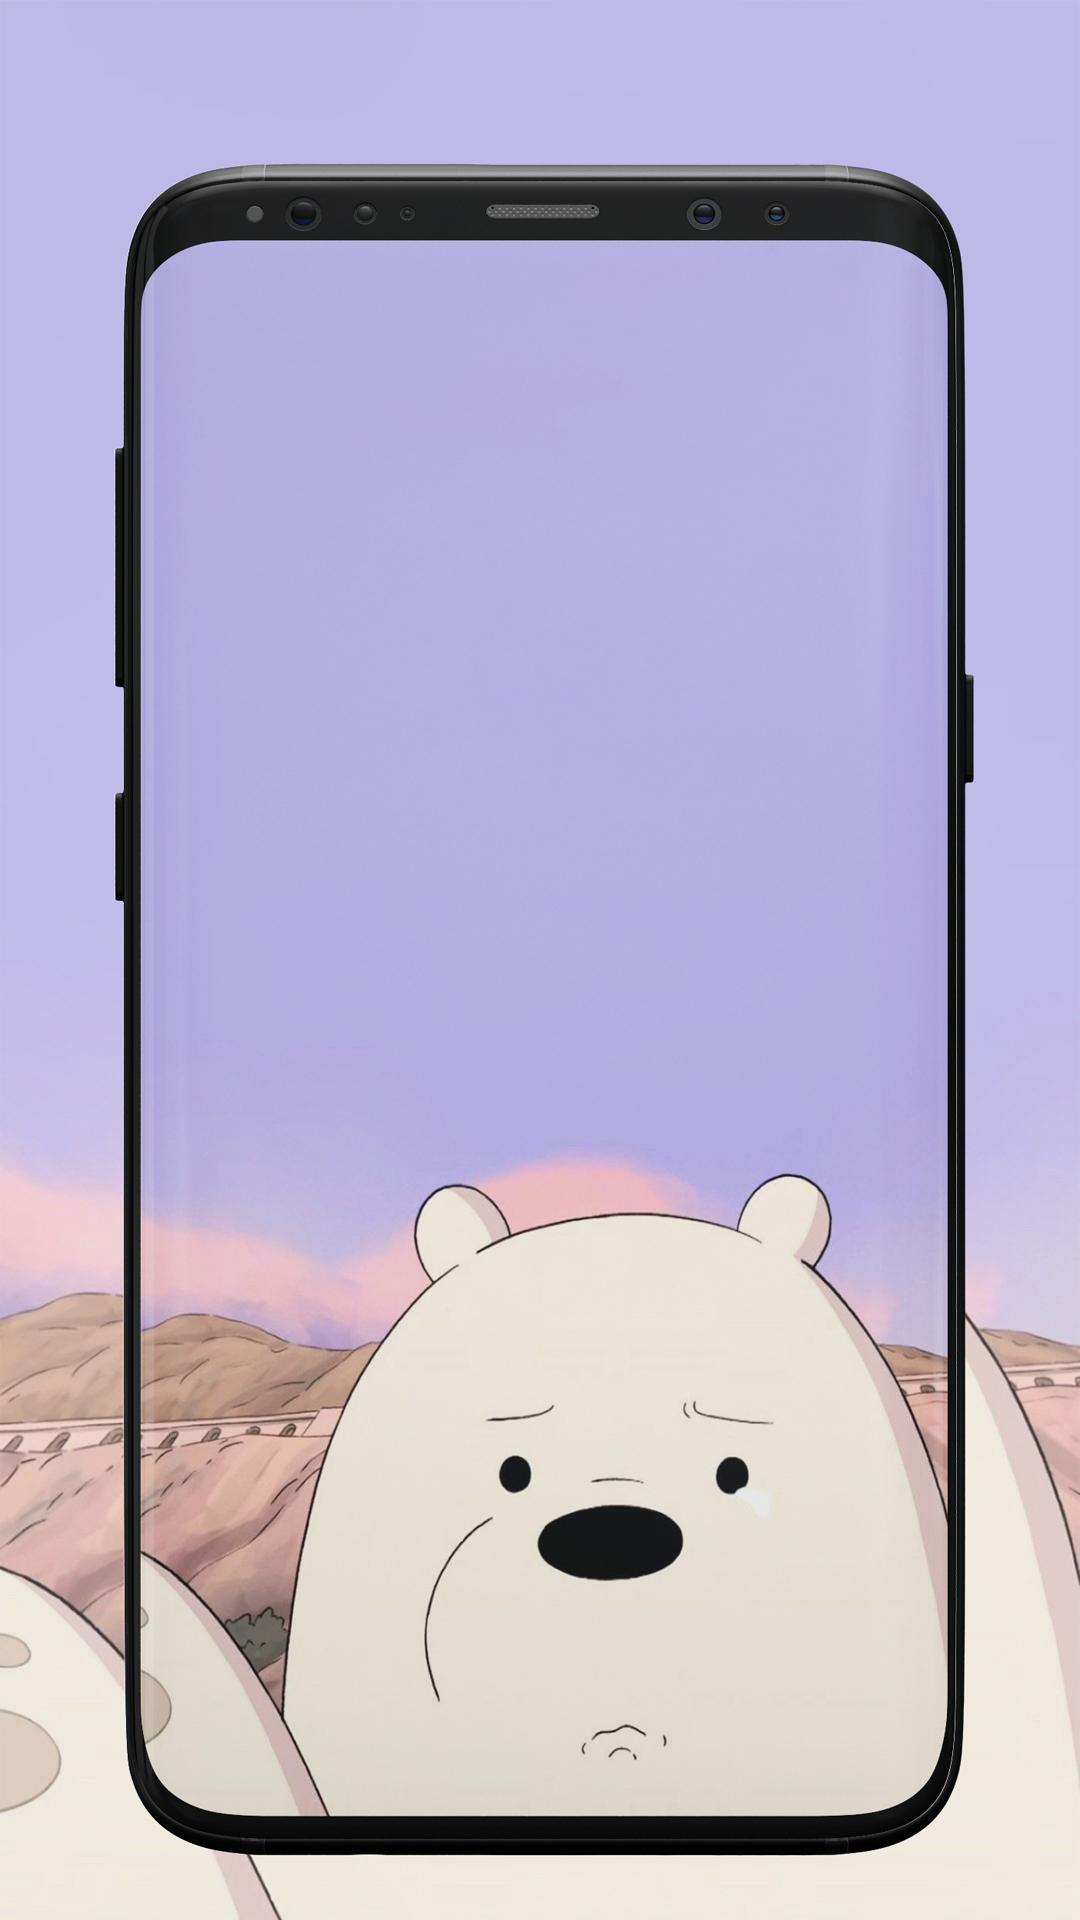 Wallpaper Beruang Lucu For Android Apk Download